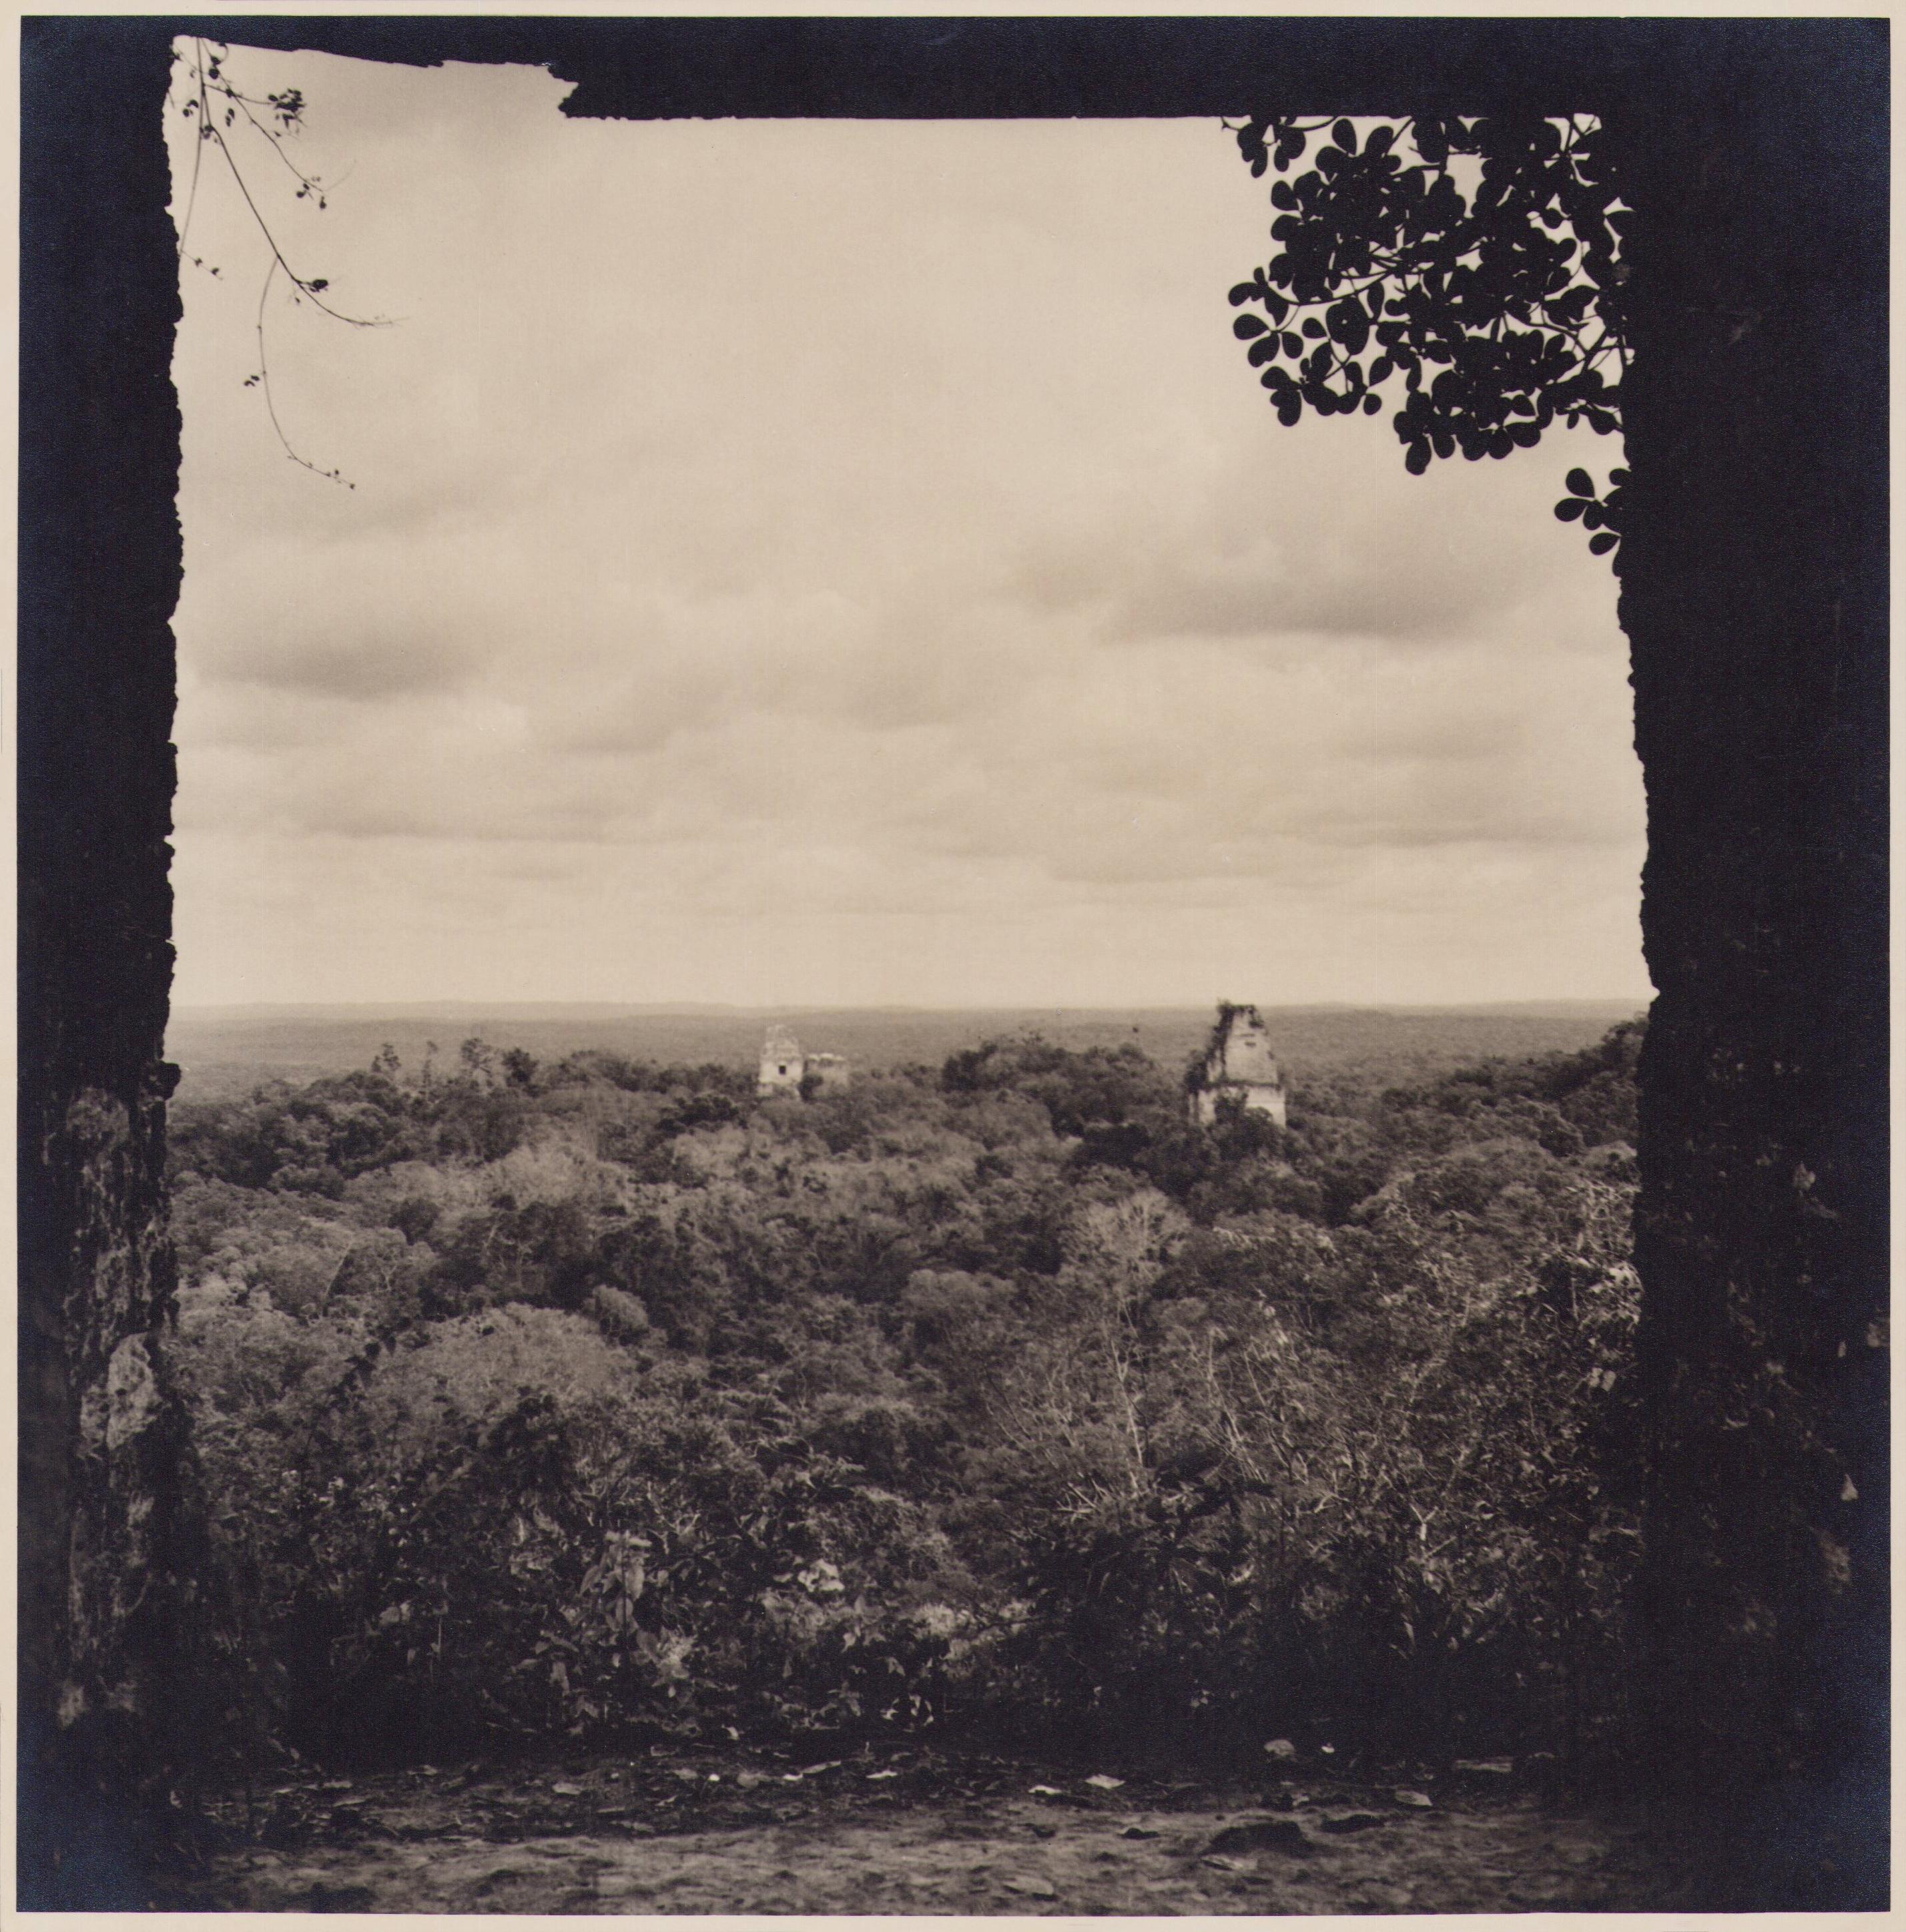 Hanna Seidel Portrait Photograph – Guatemaltekische Landschaft, Schwarz-Weiß-Fotografie, ca. 1960er Jahre, 24,4 x 24 cm